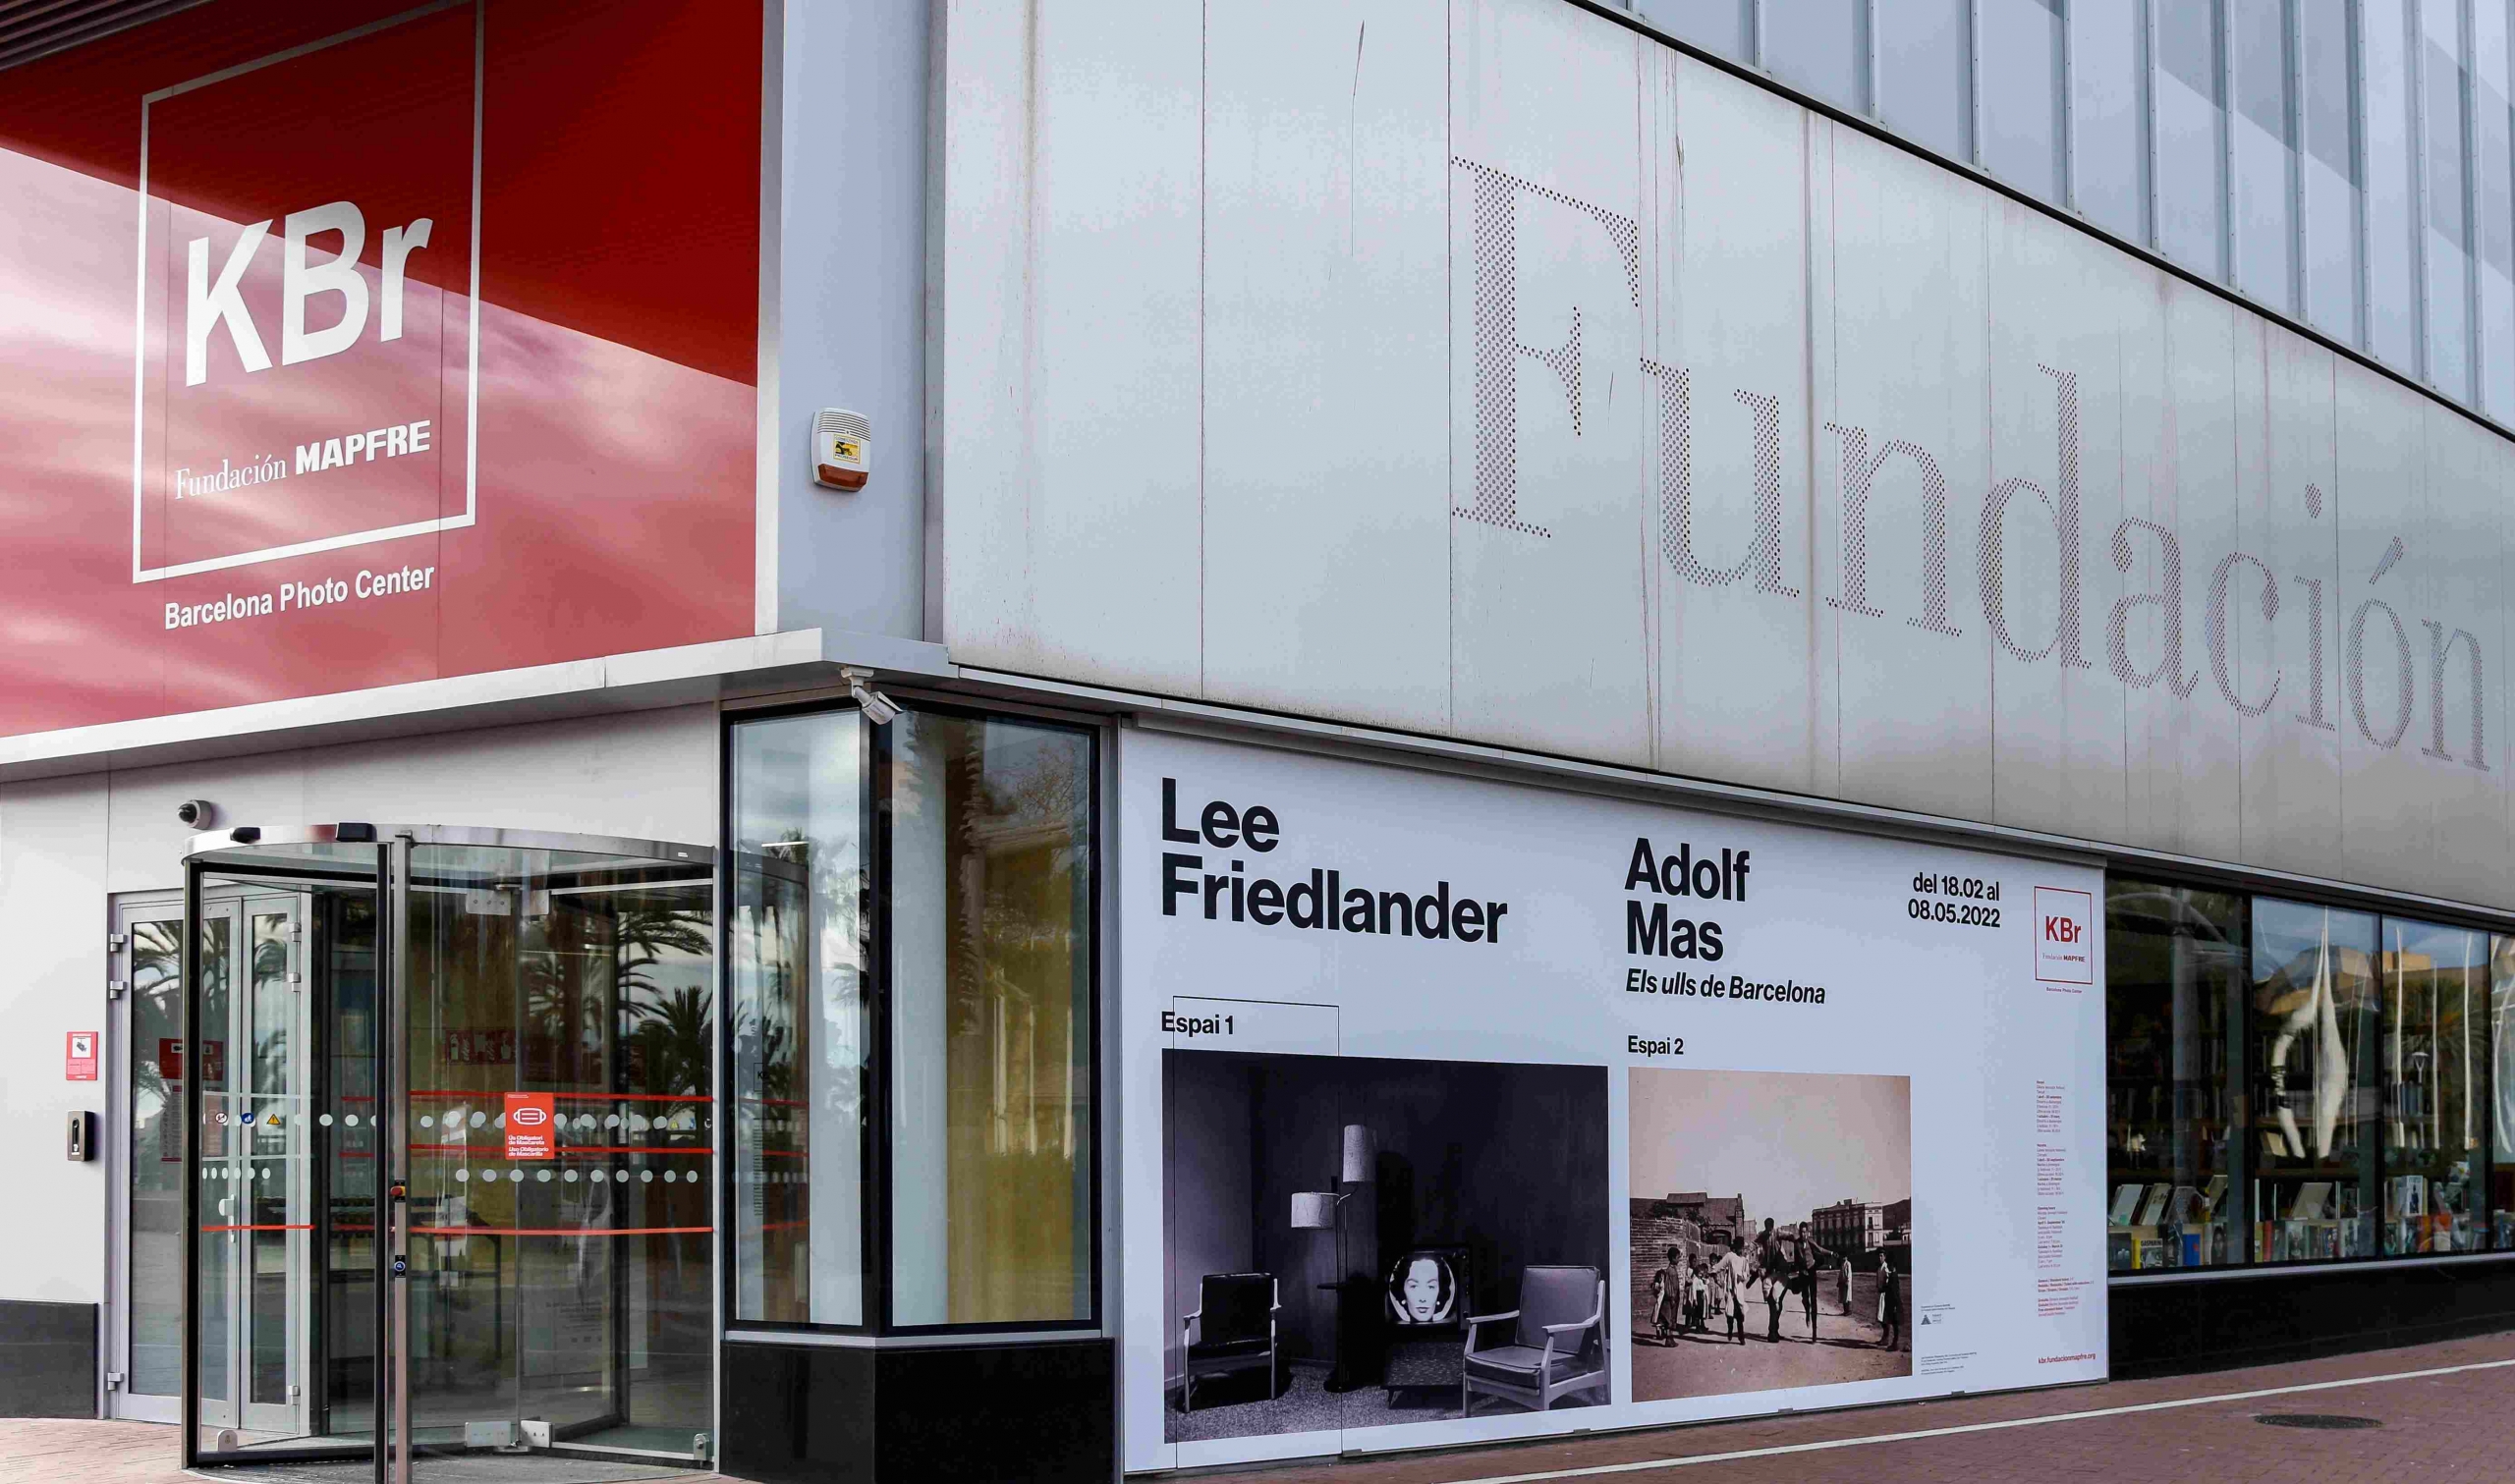 Lee Friedlander y Adolf Mas. Los ojos de Barcelona, nuevas exposiciones del centro KBr Fundación MAPFRE Barcelona